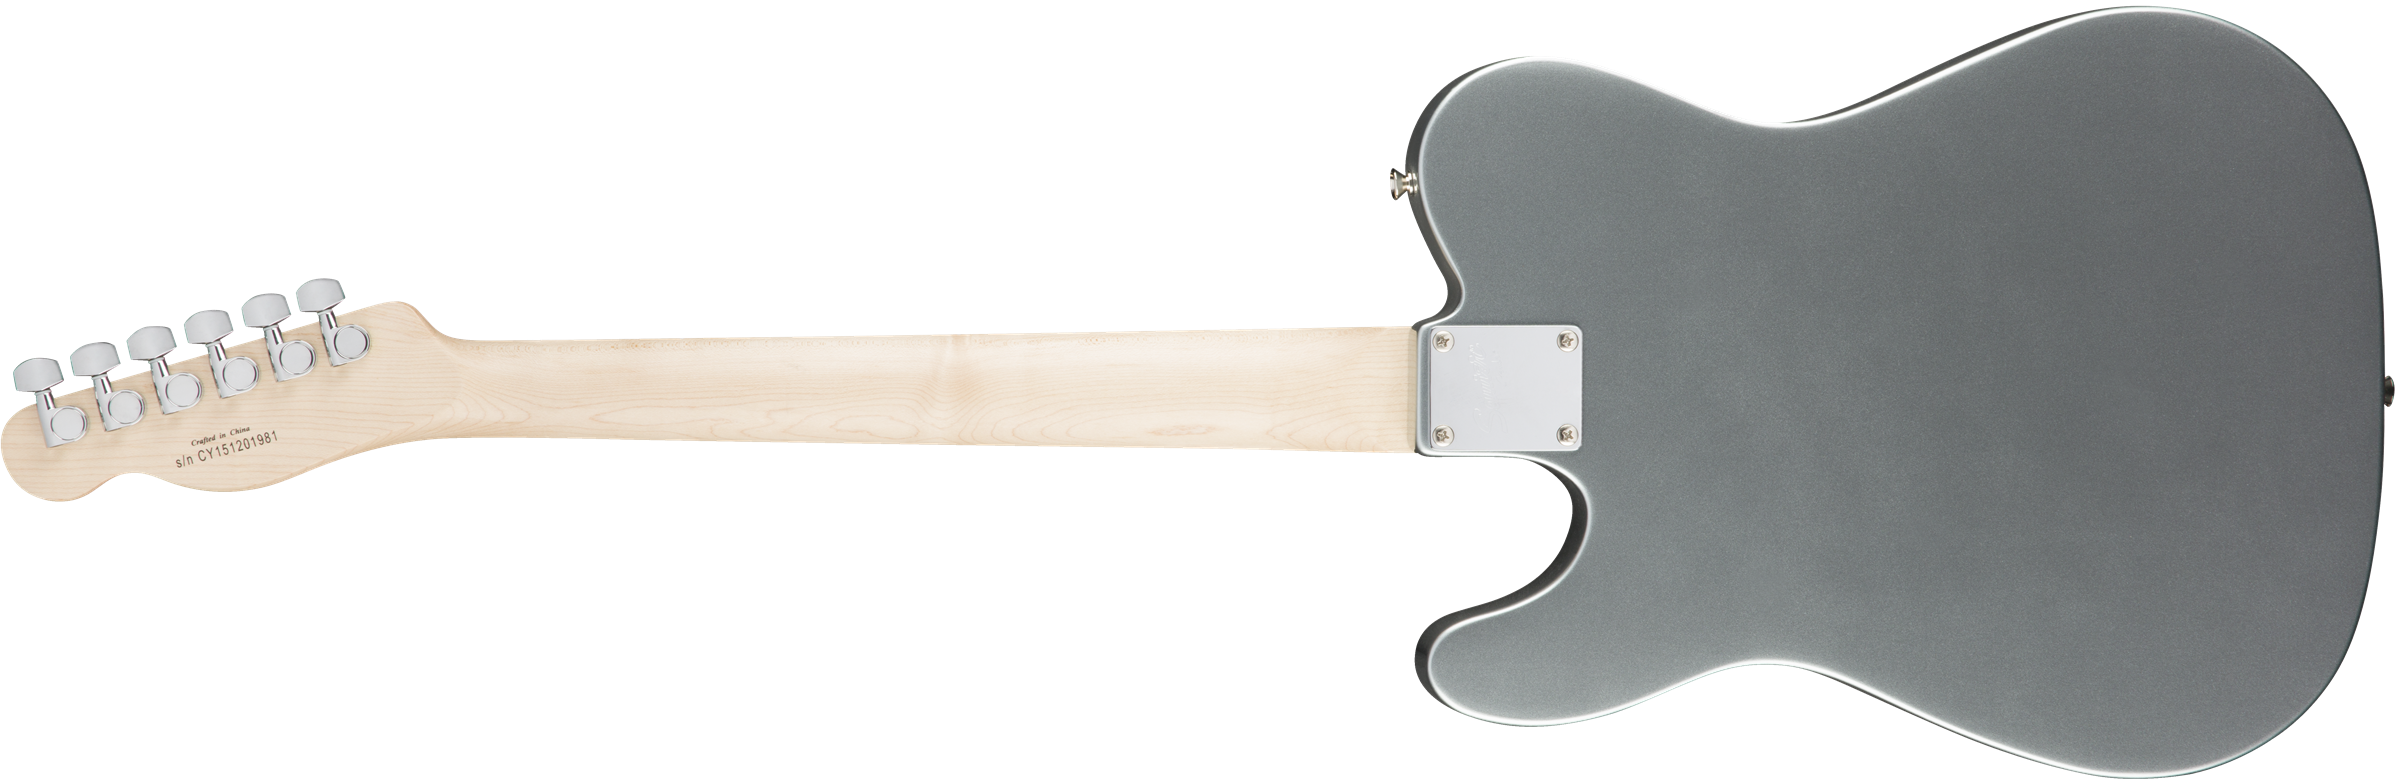 Squier Tele Affinity Series 2019 Lau - Slick Silver - Guitarra eléctrica con forma de tel - Variation 5